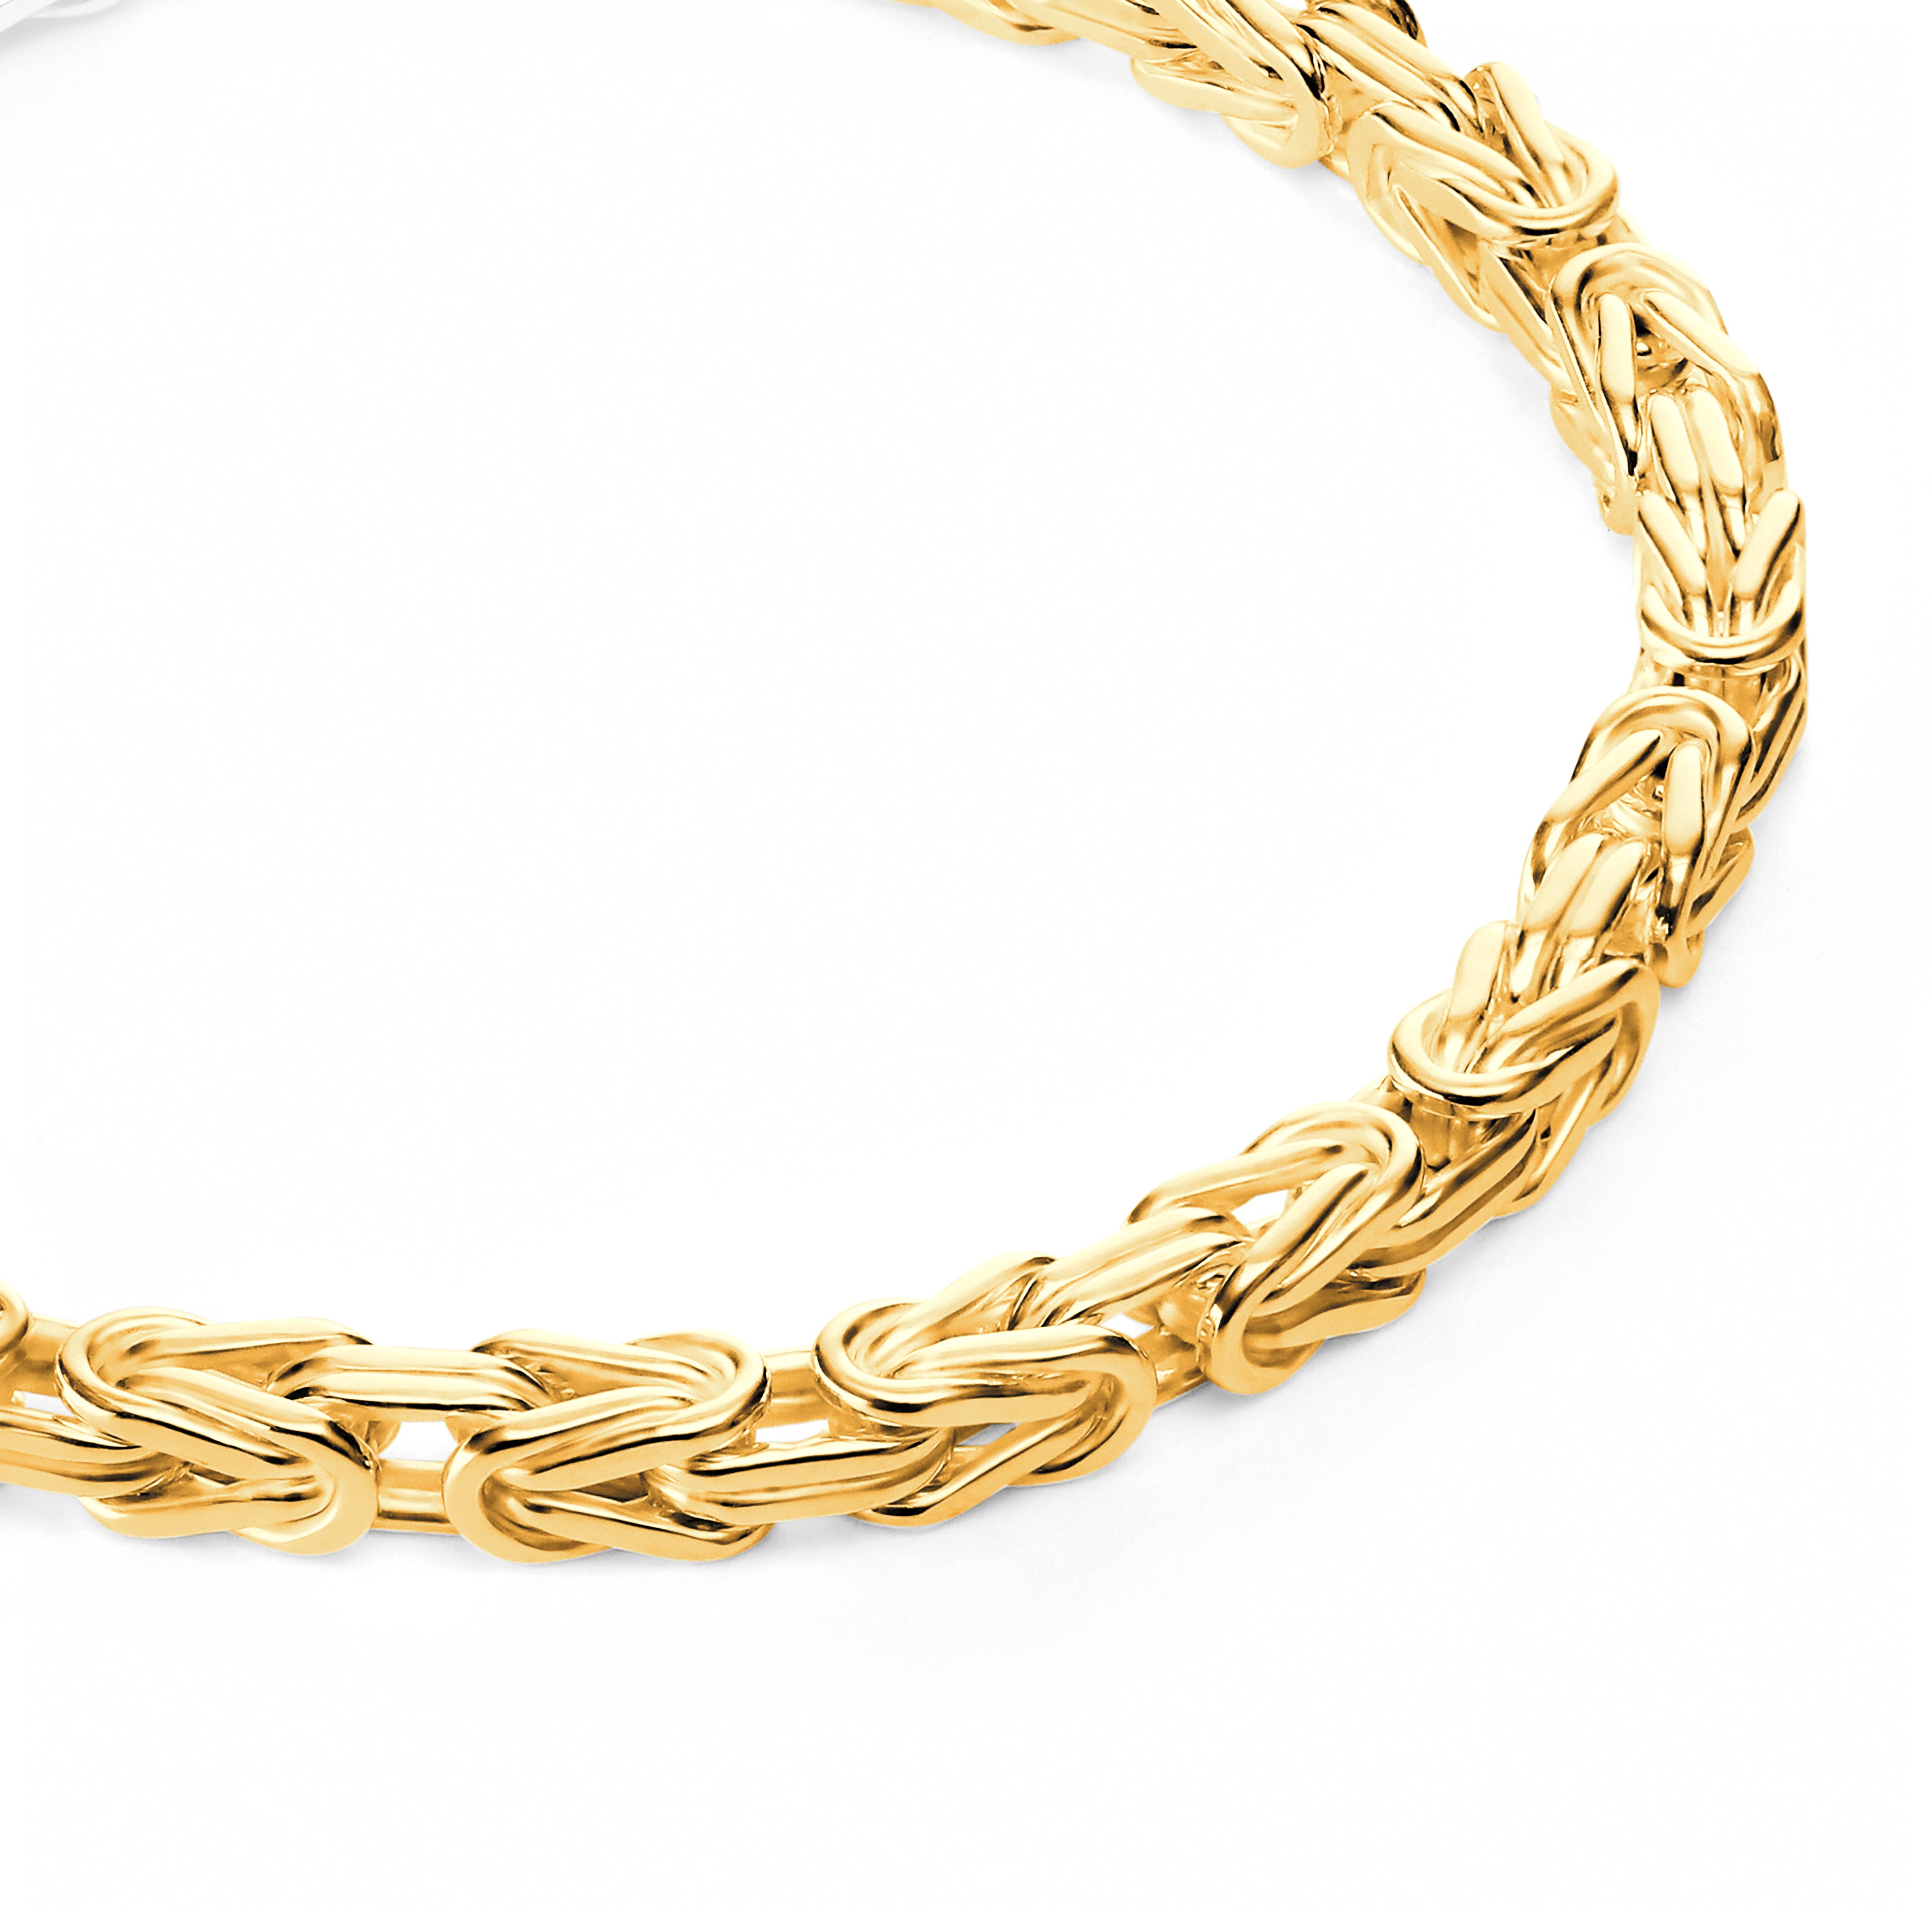 Byzantine bracelet 4mm wide - 585 gold